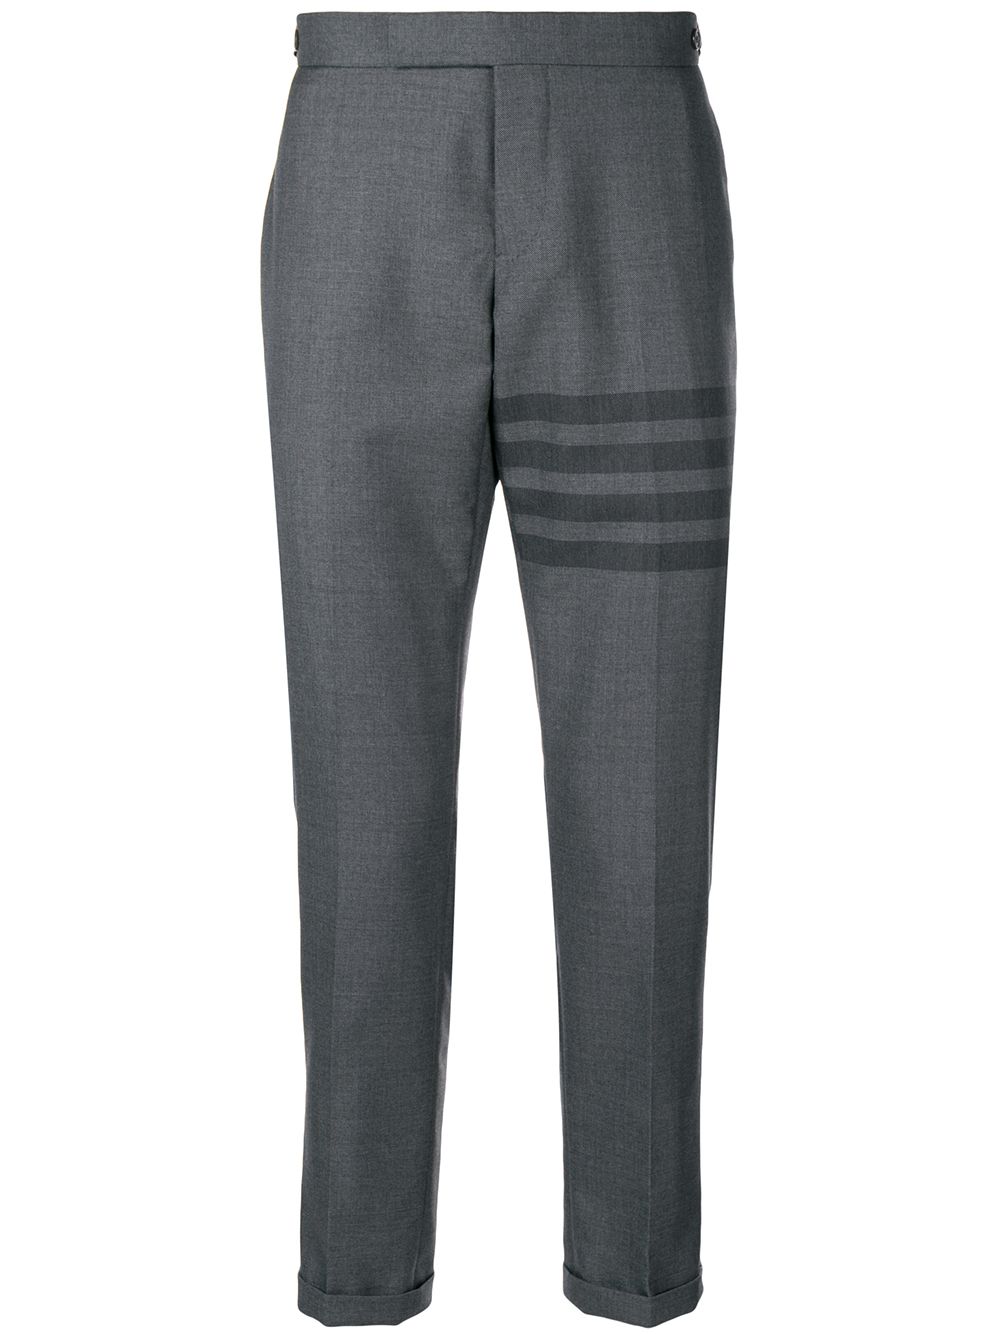  Thom Browne 4-bar Skinny-fit Trouser - Grey 